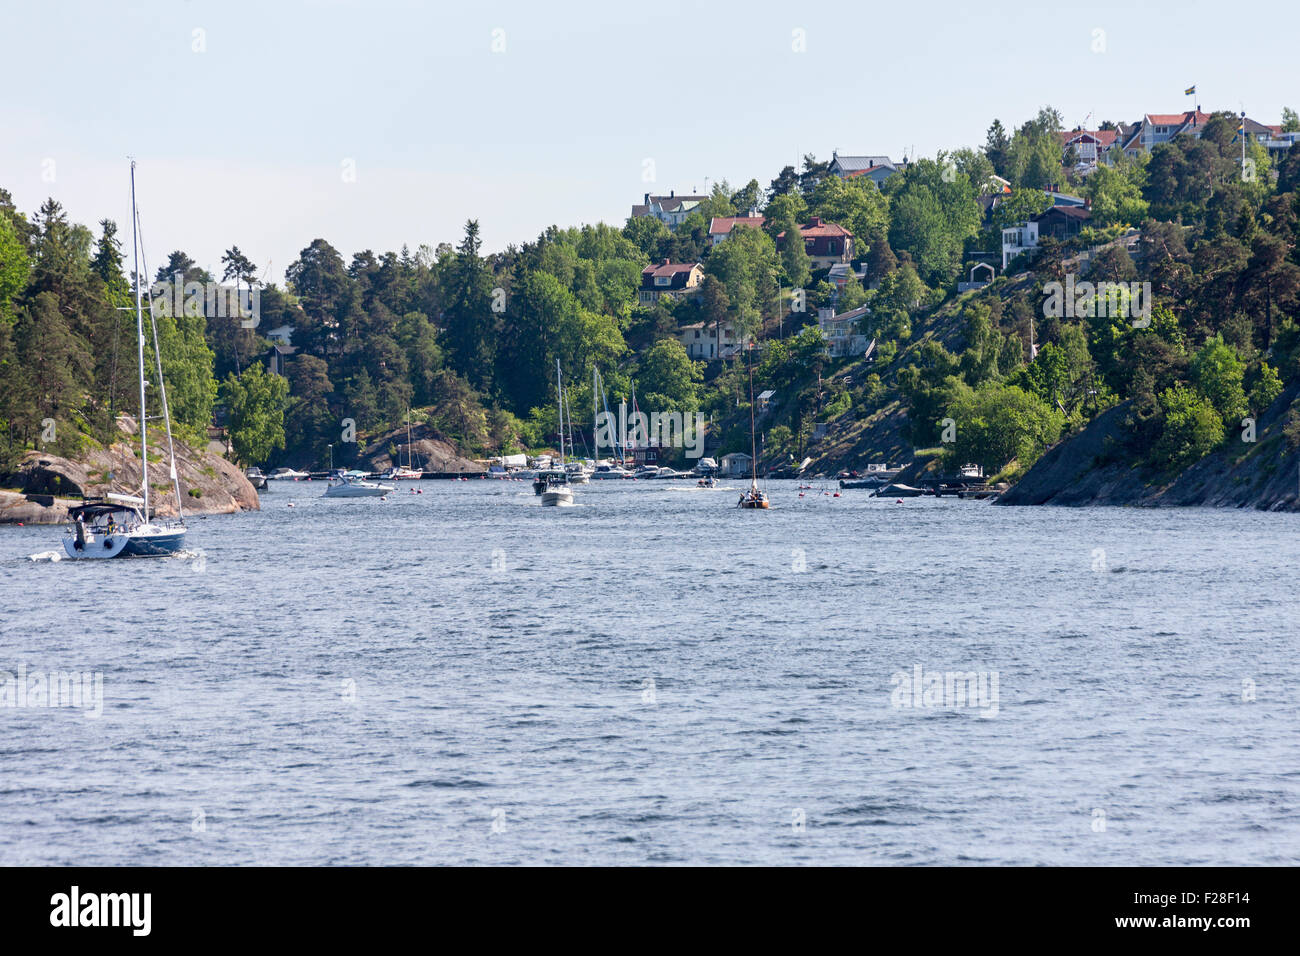 Segelschiffe in Meer mit Stadt im Hintergrund, Velamsund, Stockholm, Schweden Stockfoto